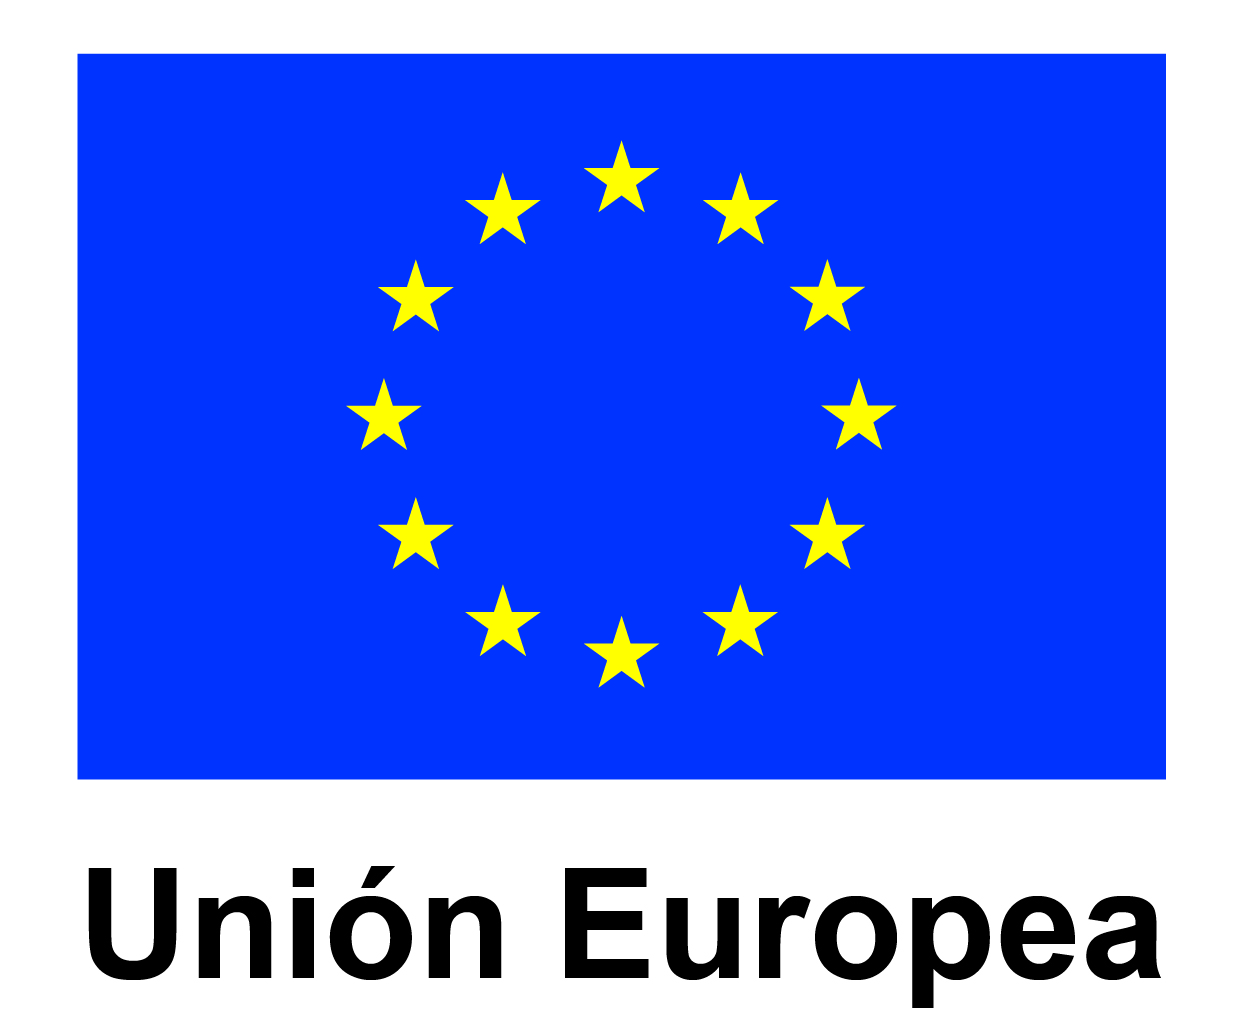 LOGO UNION EUROPEA